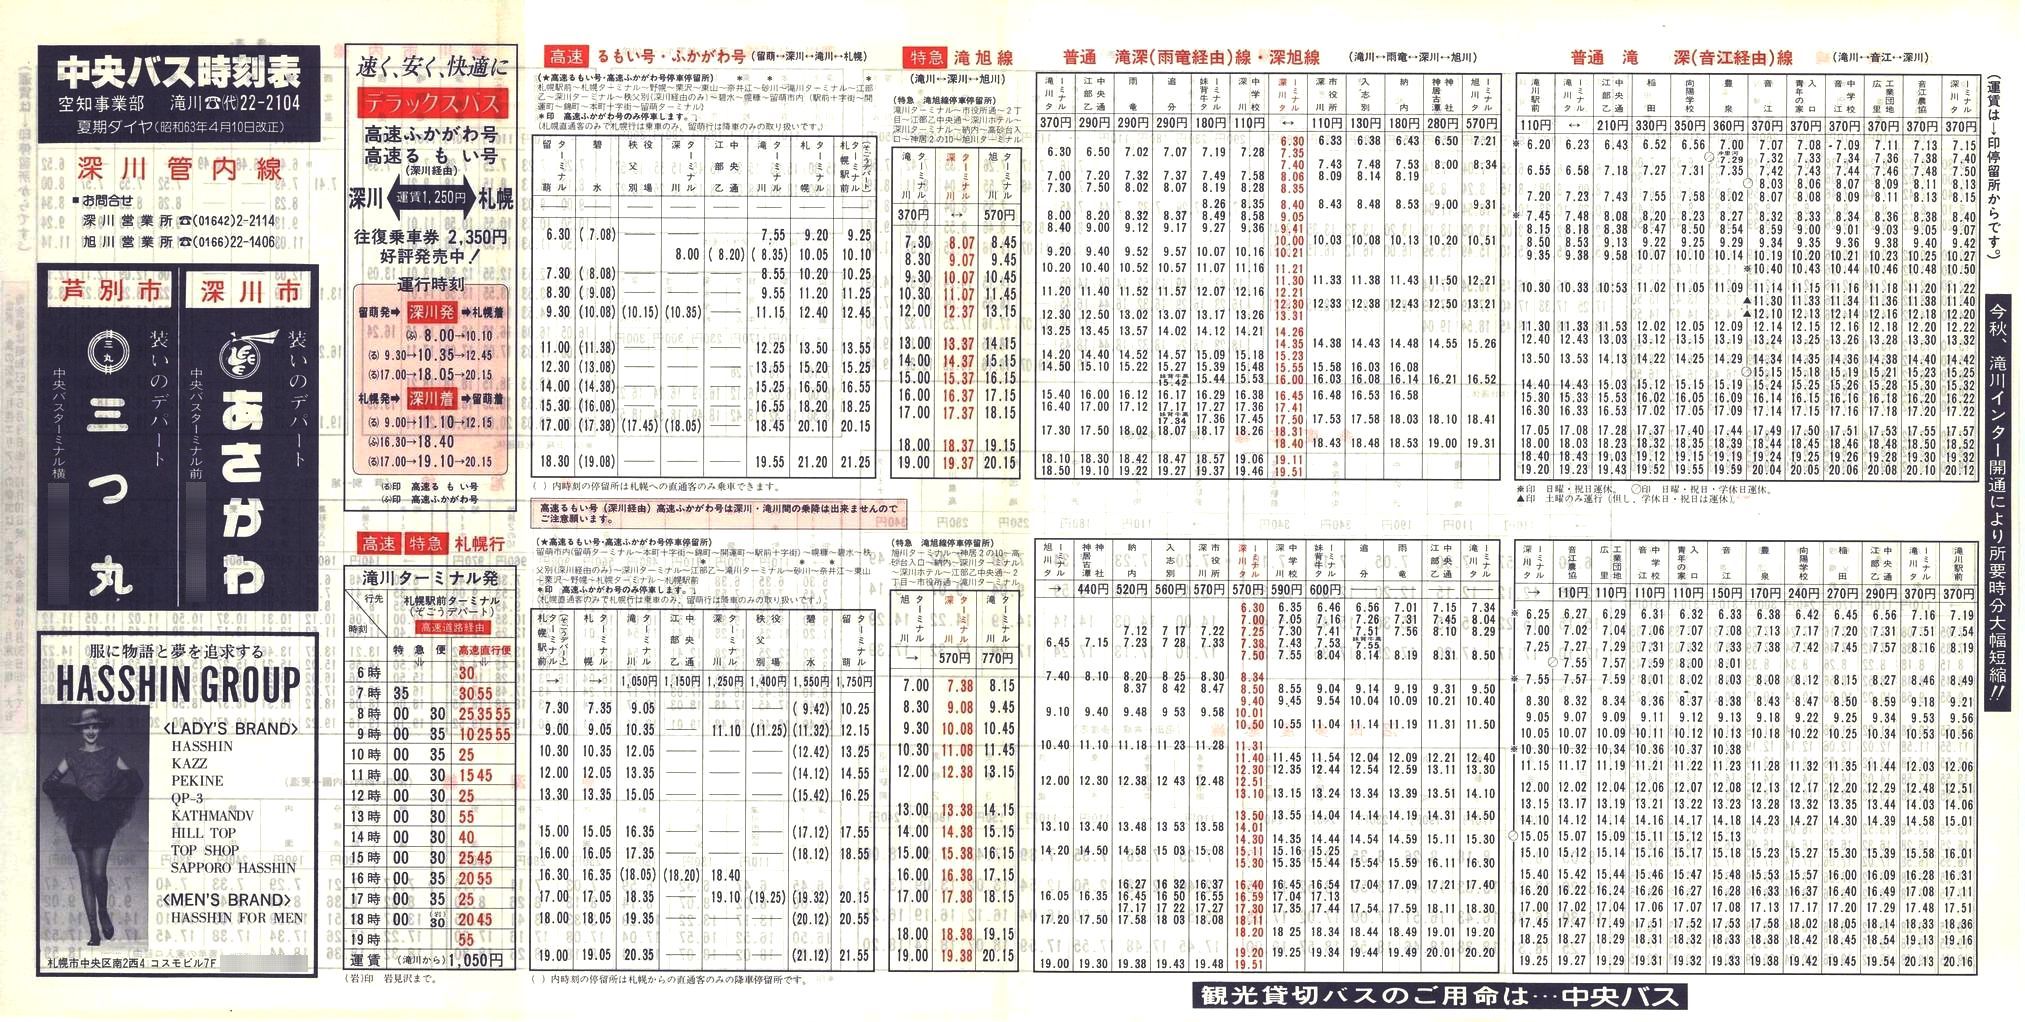 1988-04-10改正_北海道中央バス(空知)_深川管内線時刻表表面